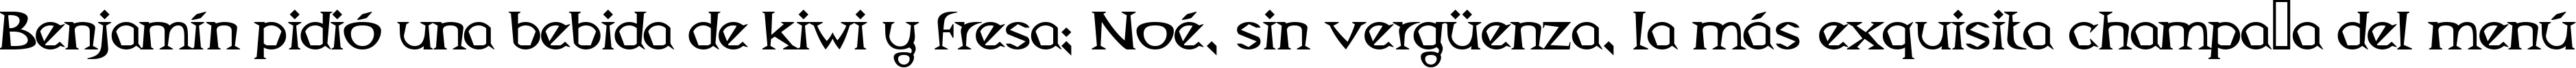 Пример написания шрифтом Magyar Serif текста на испанском